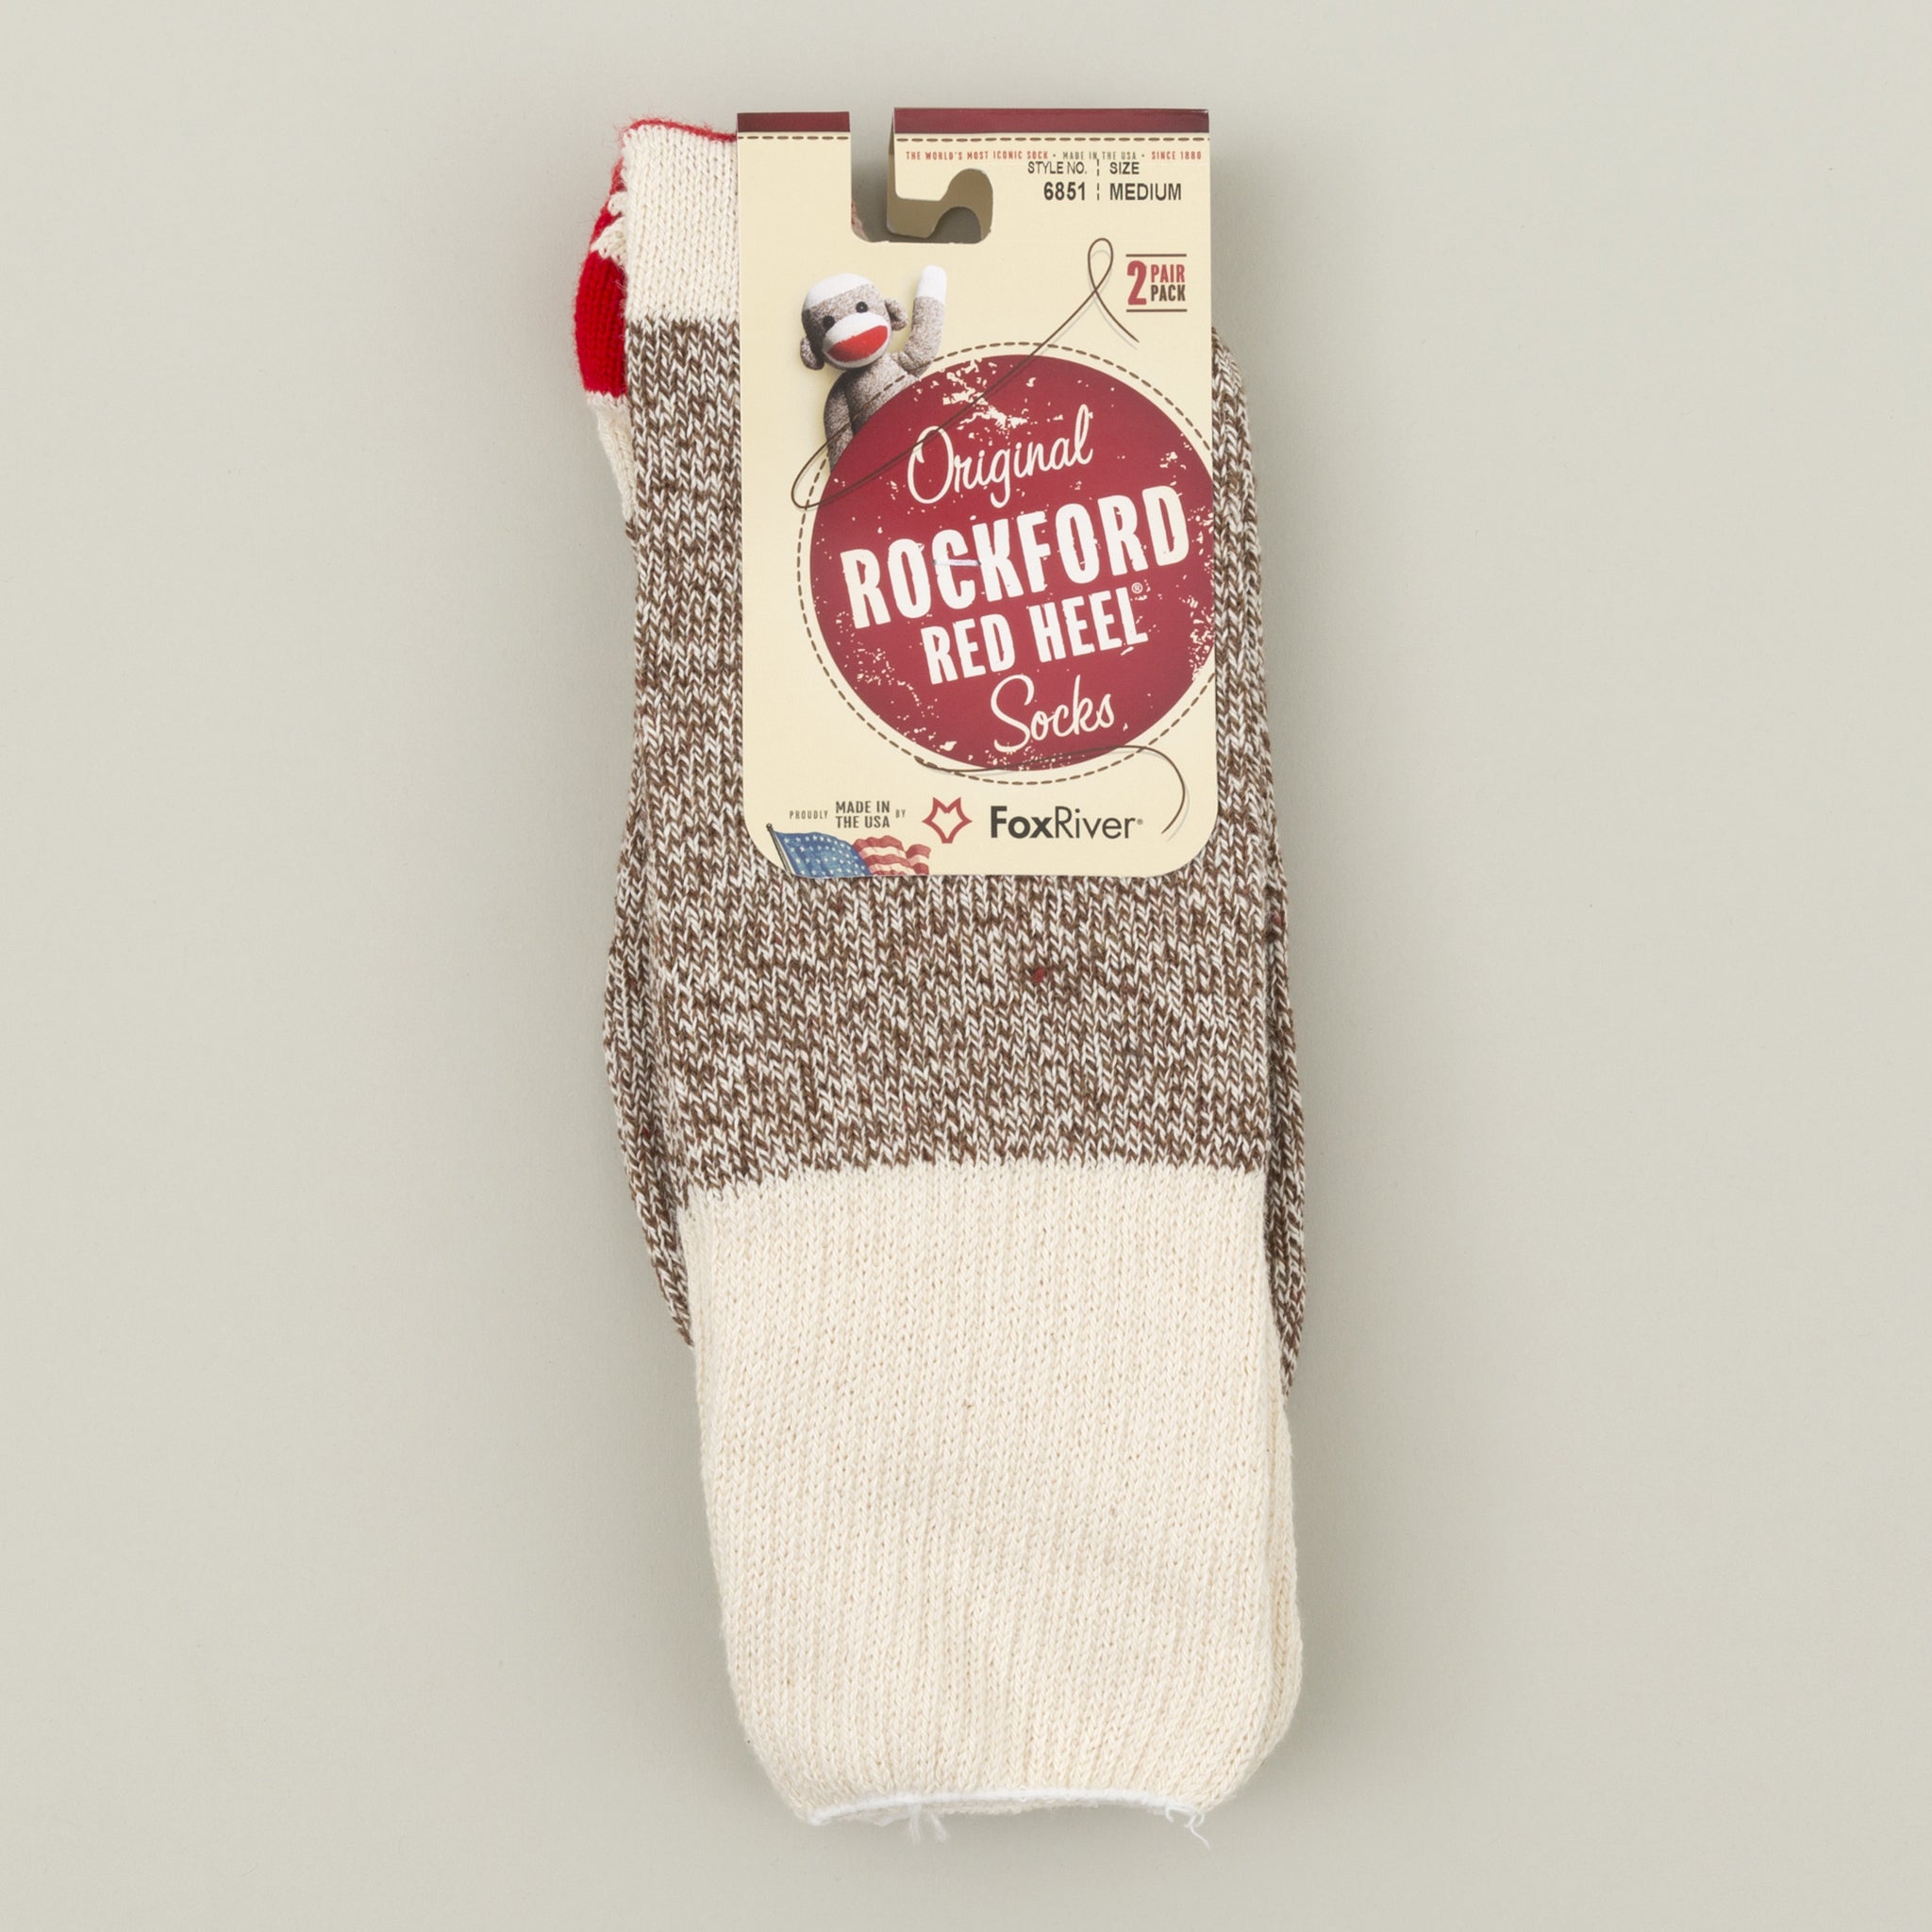 Rockford Red Heel Socks, Brown - The 